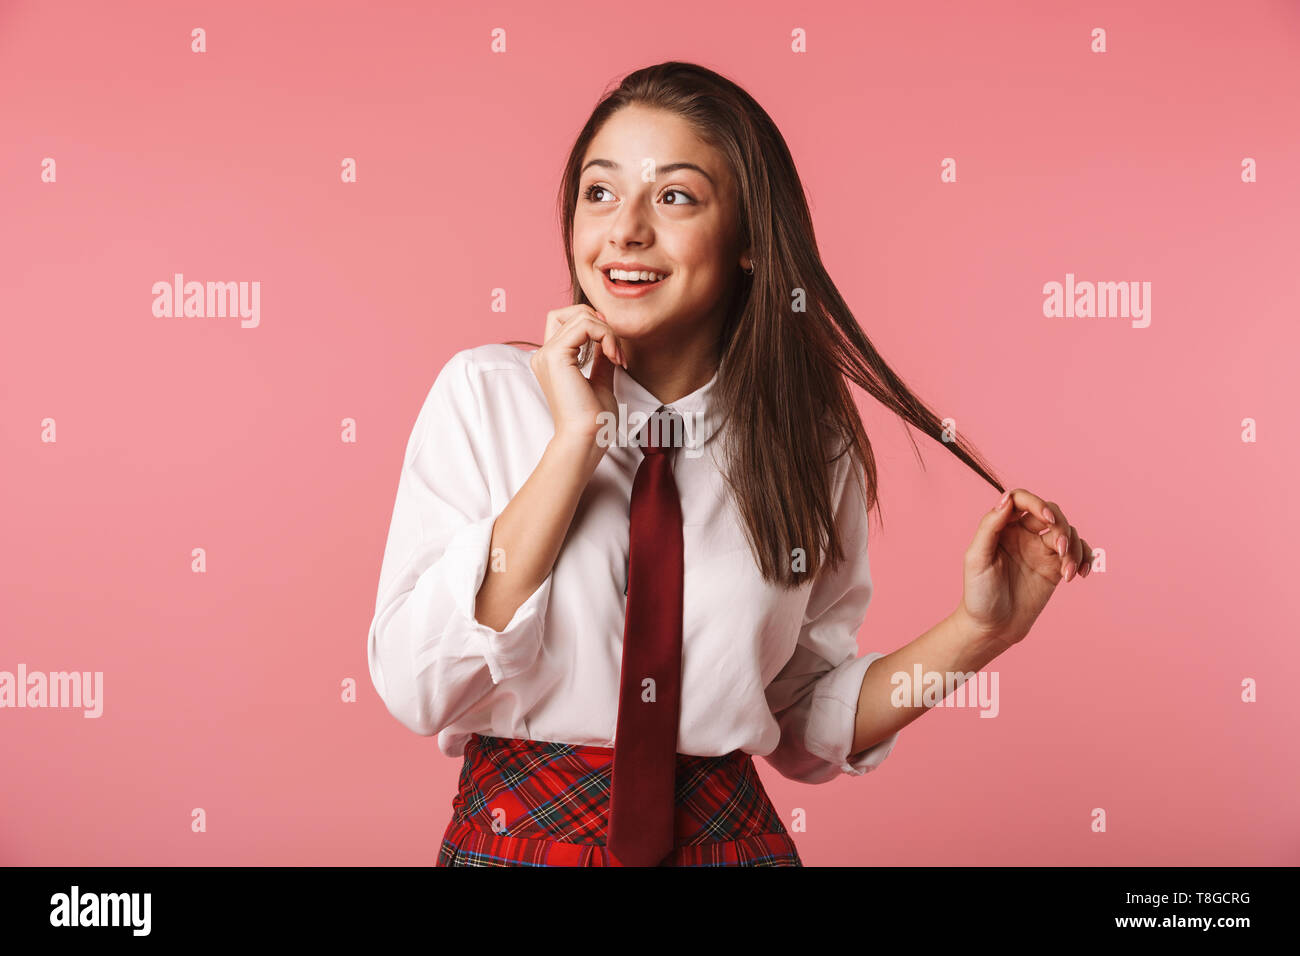 Ritratto di felice ragazza 15-16y in uniforme scolastica in piedi isolato su sfondo rosso Foto Stock